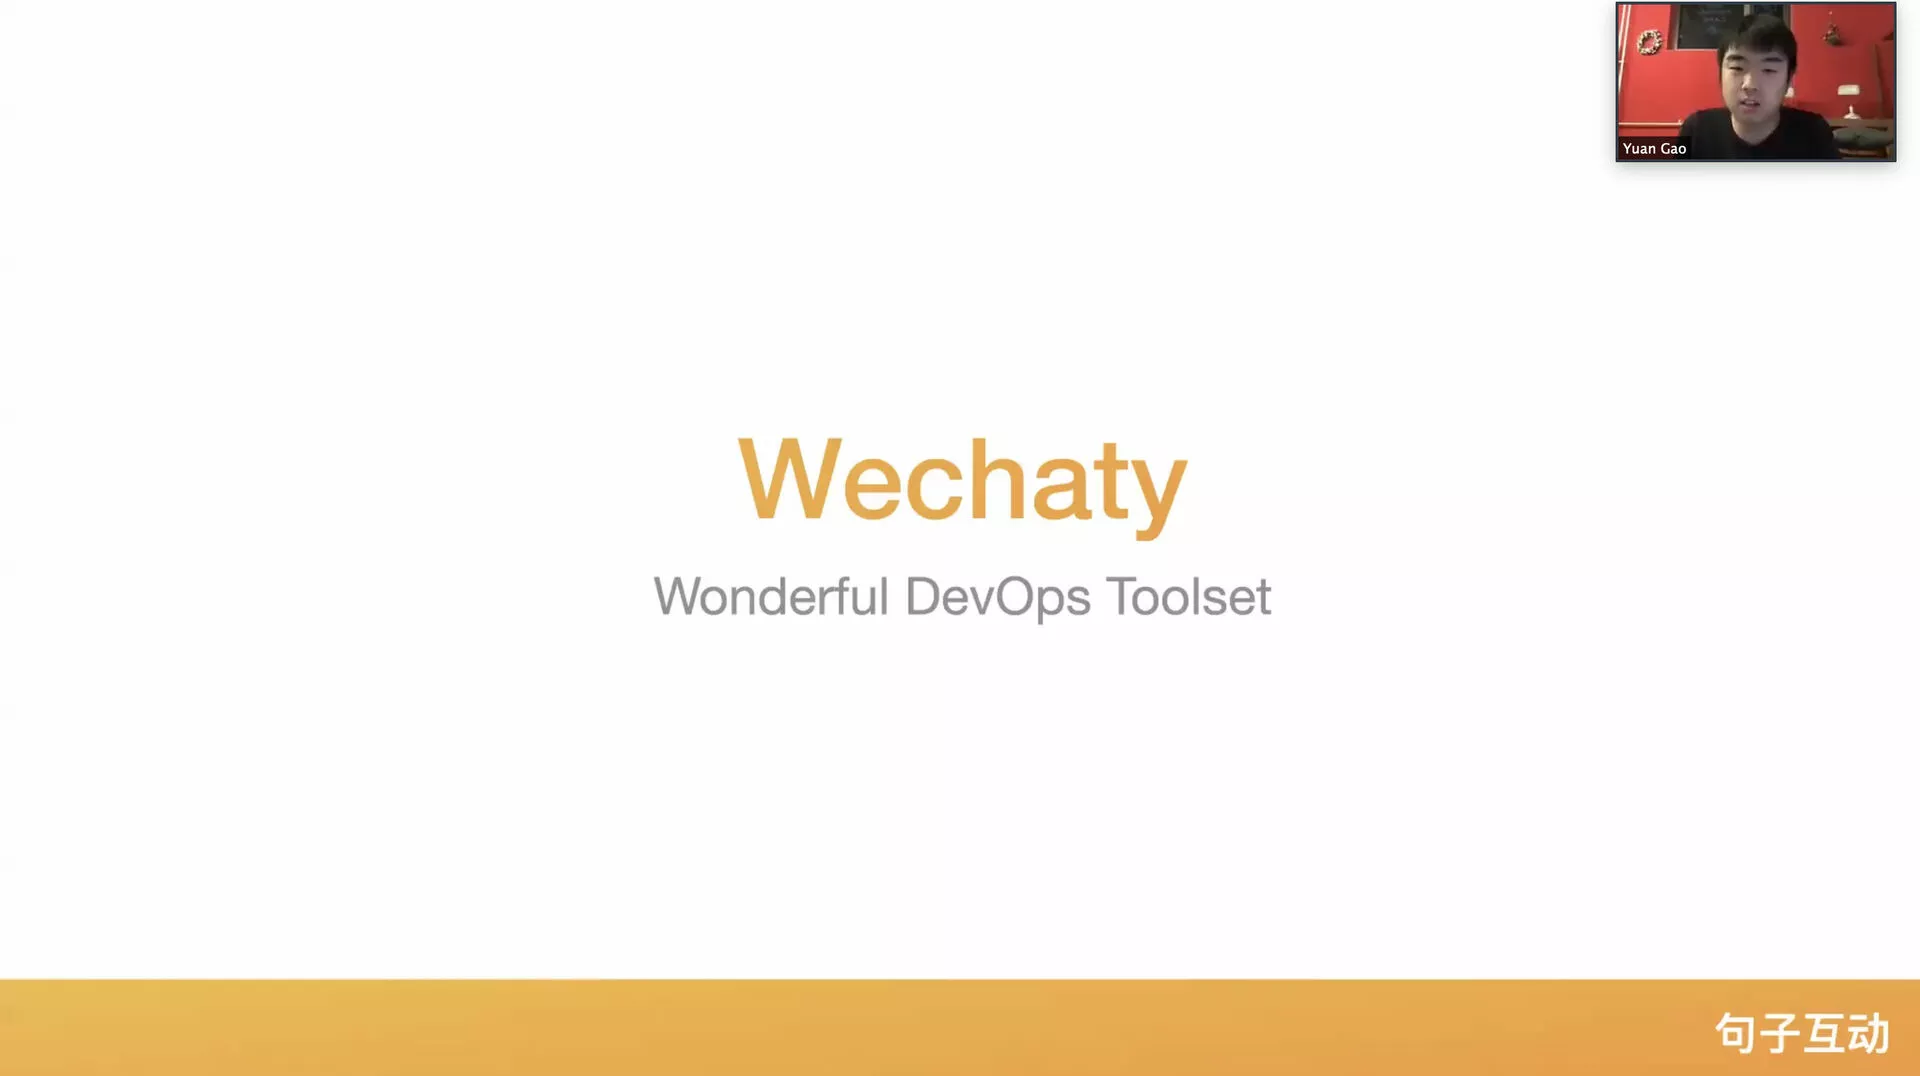 DevOps Wechaty - Yuan GAO (高原)